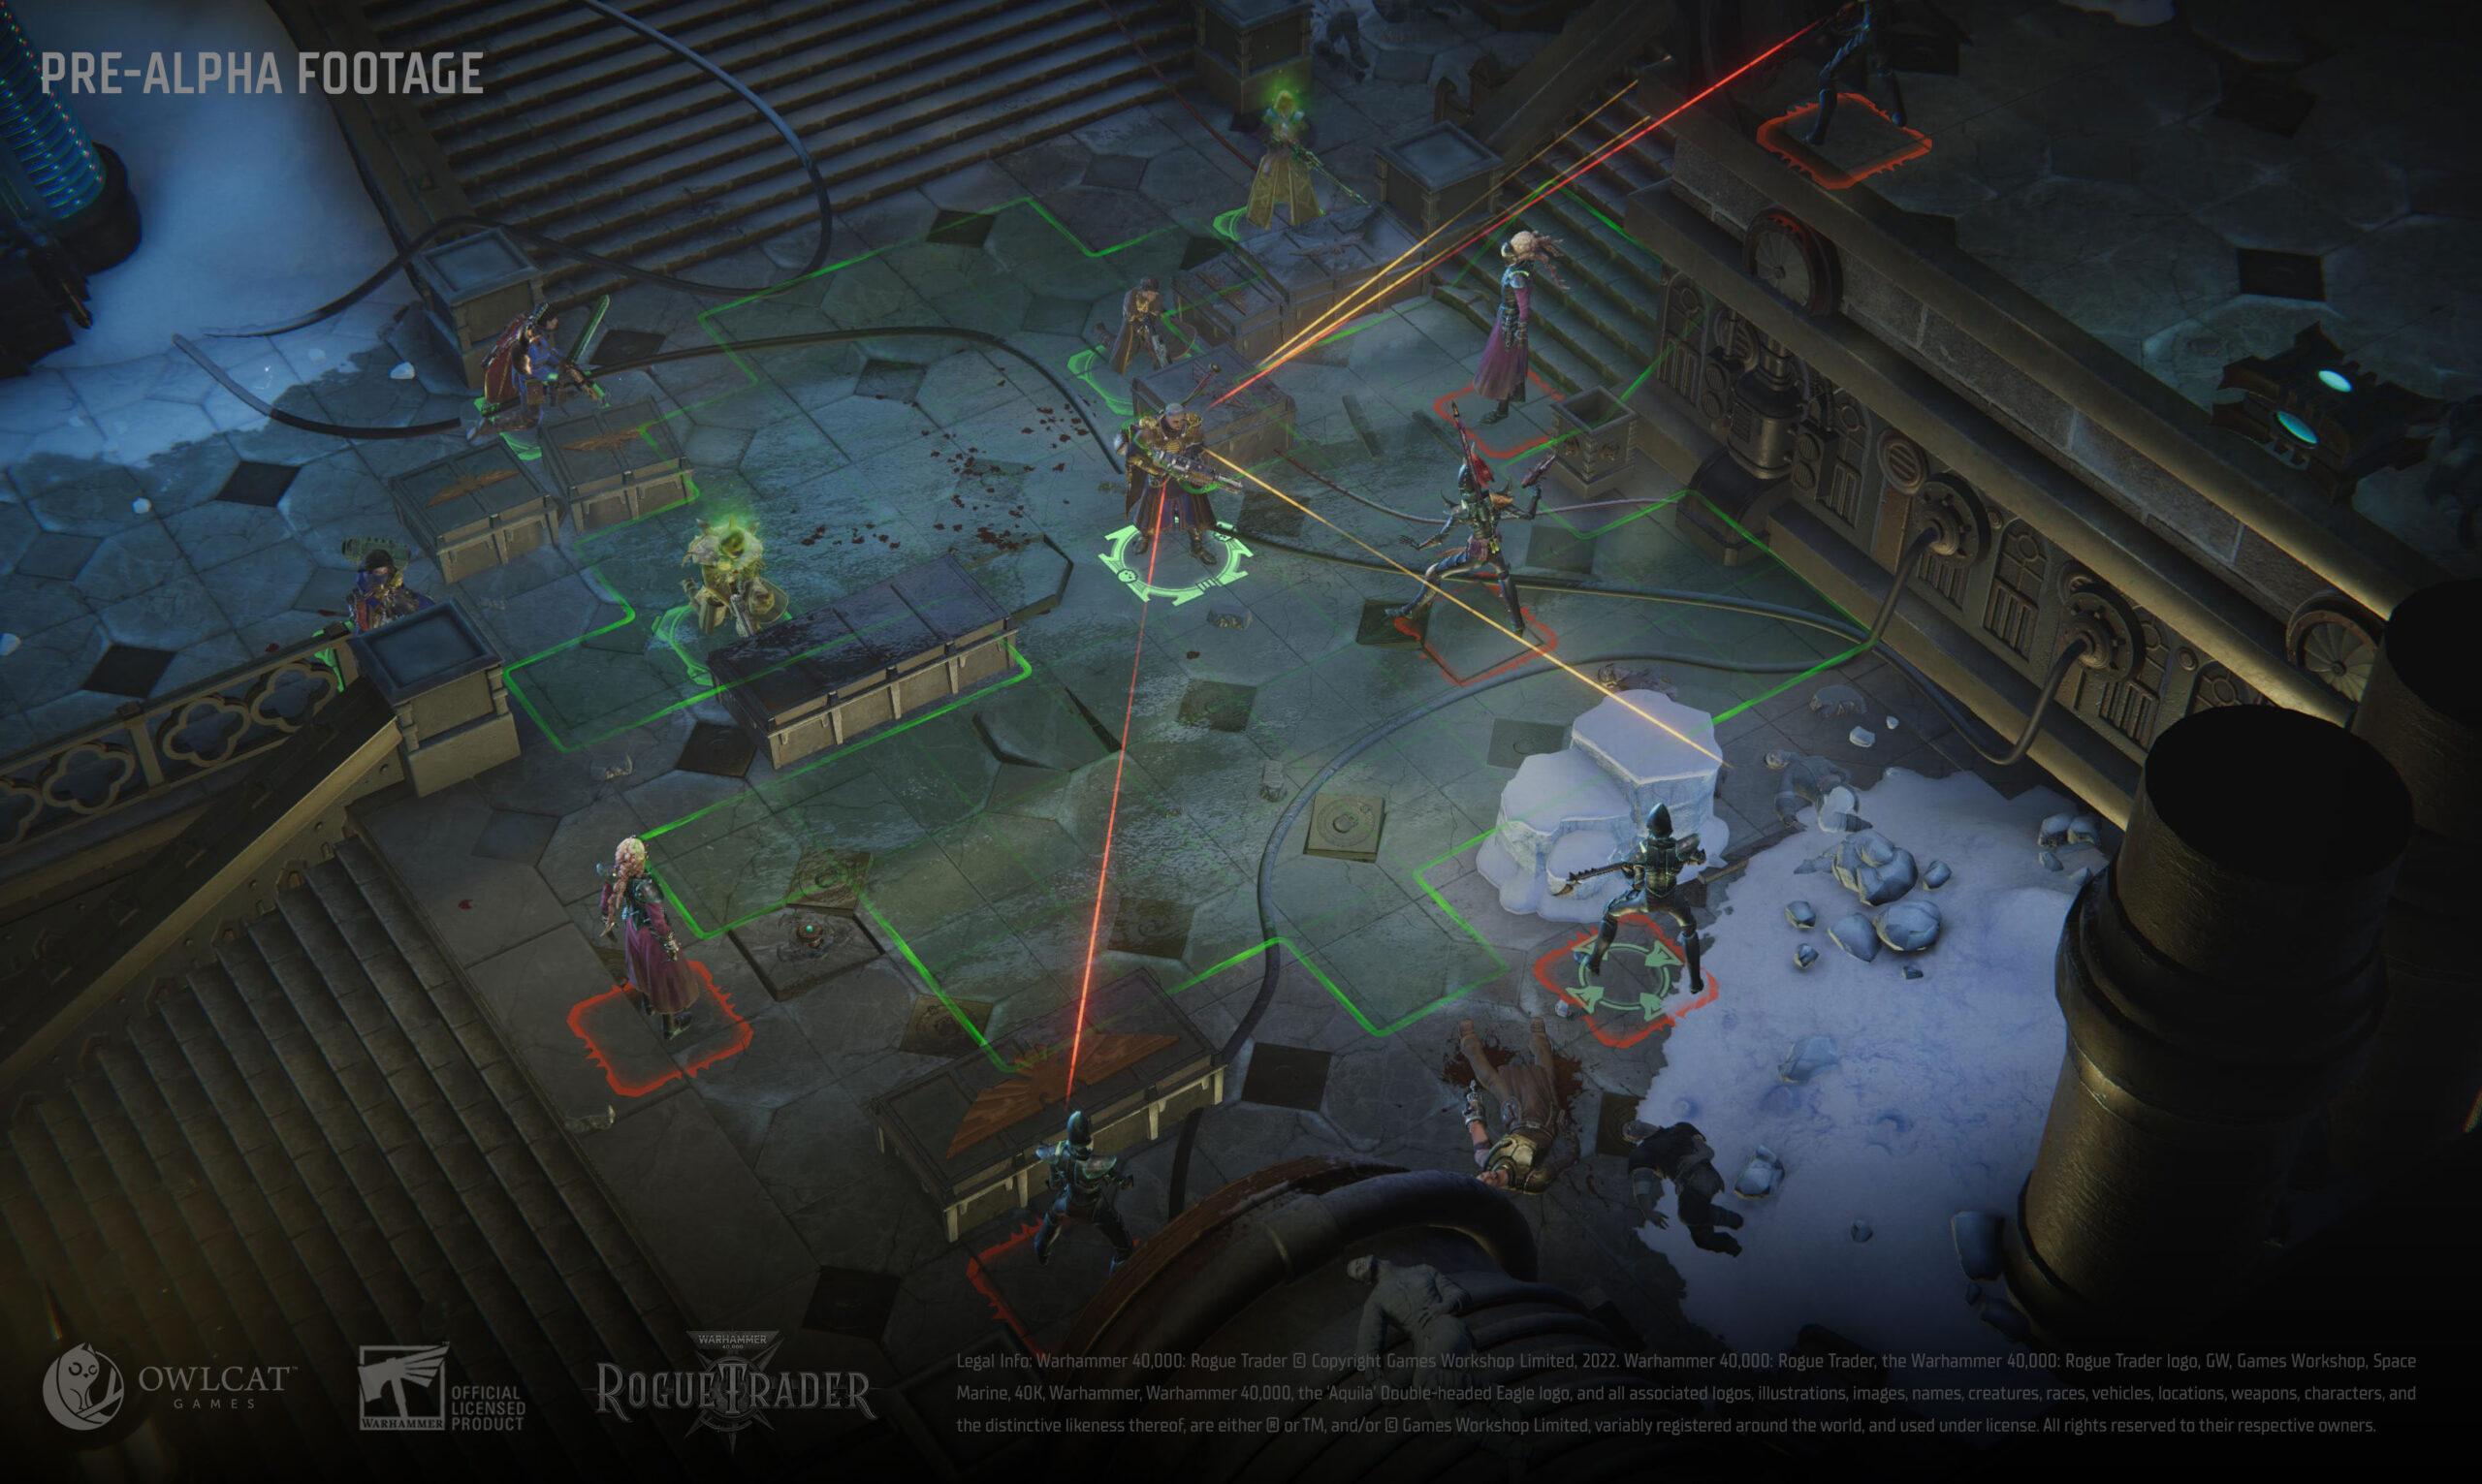 Скриншот-2 из игры Warhammer 40,000: Rogue Trader Voidfarer Edition